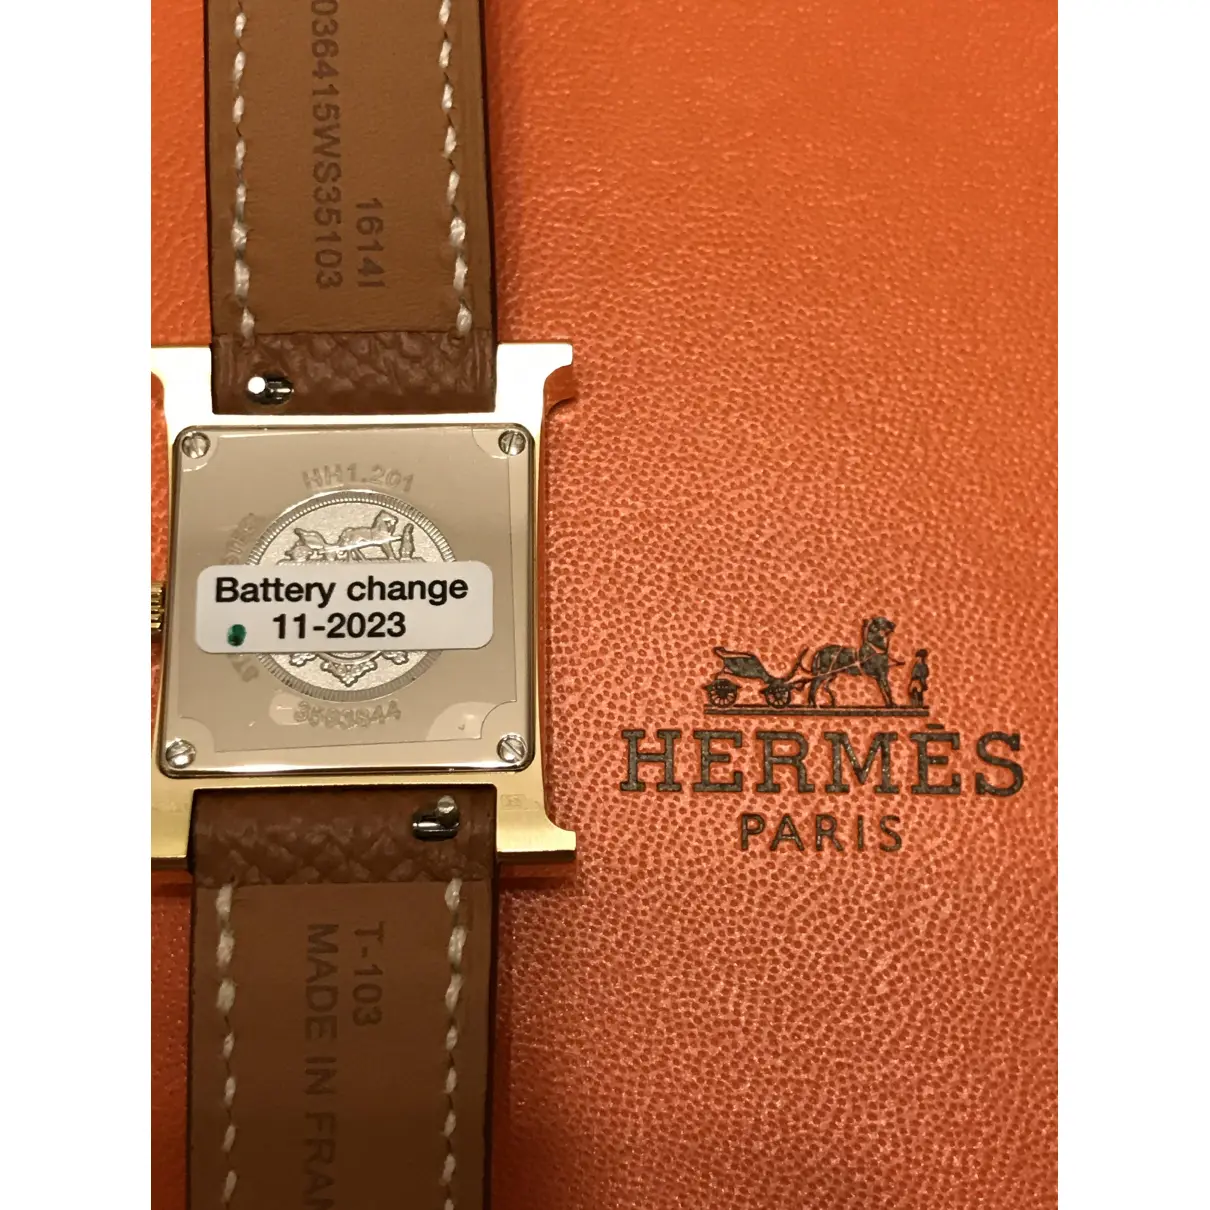 Buy Hermès Heure H watch online